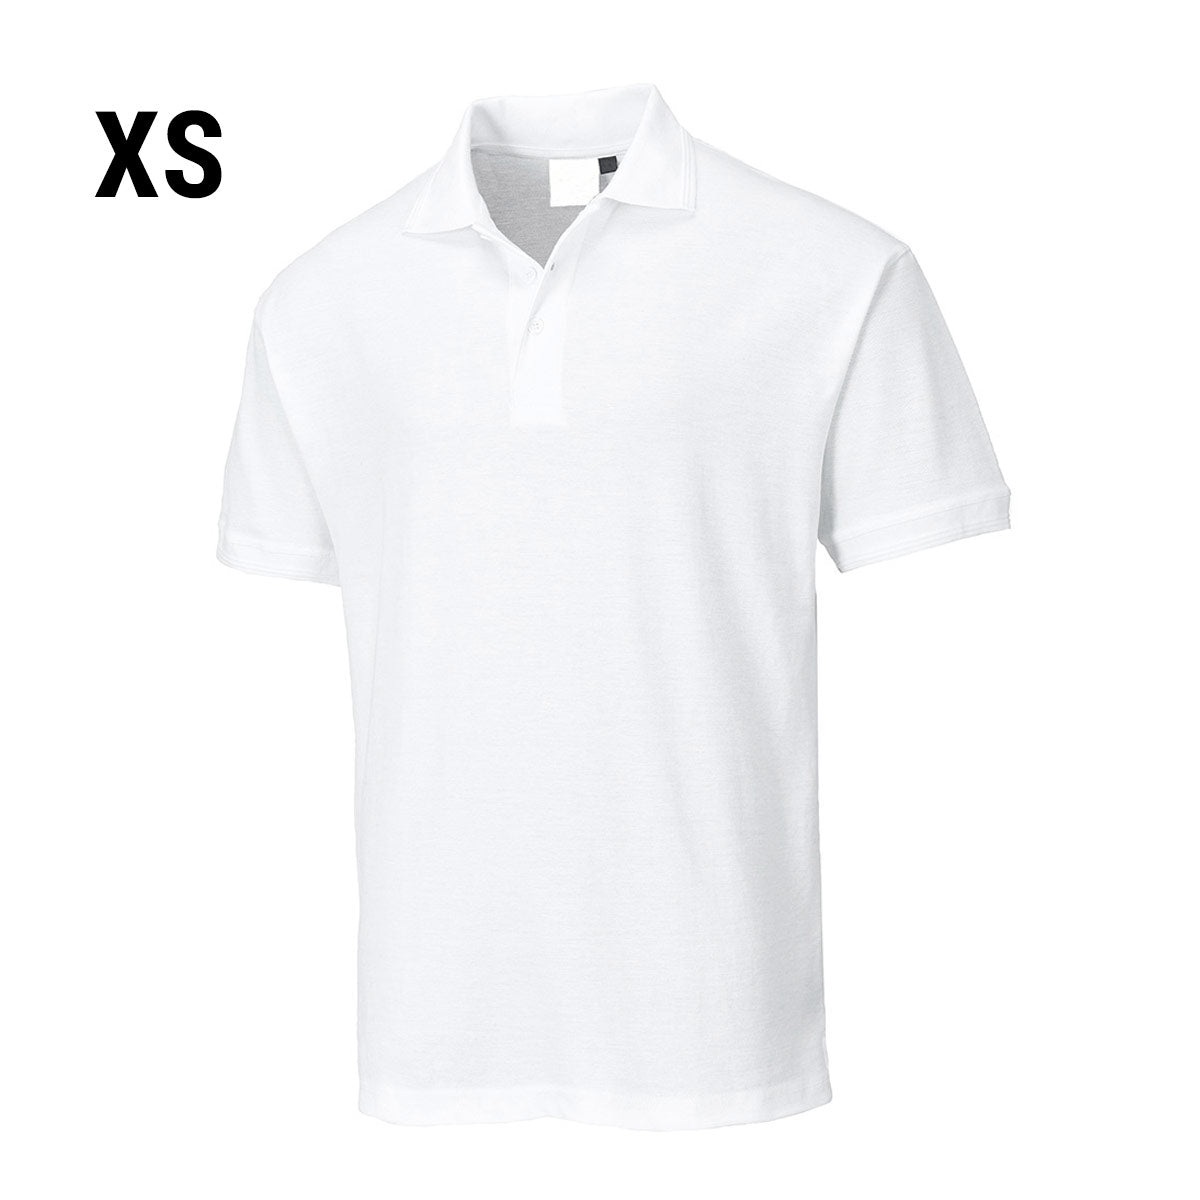 Polo shirt til mænd - Hvid - Størrelse: XS